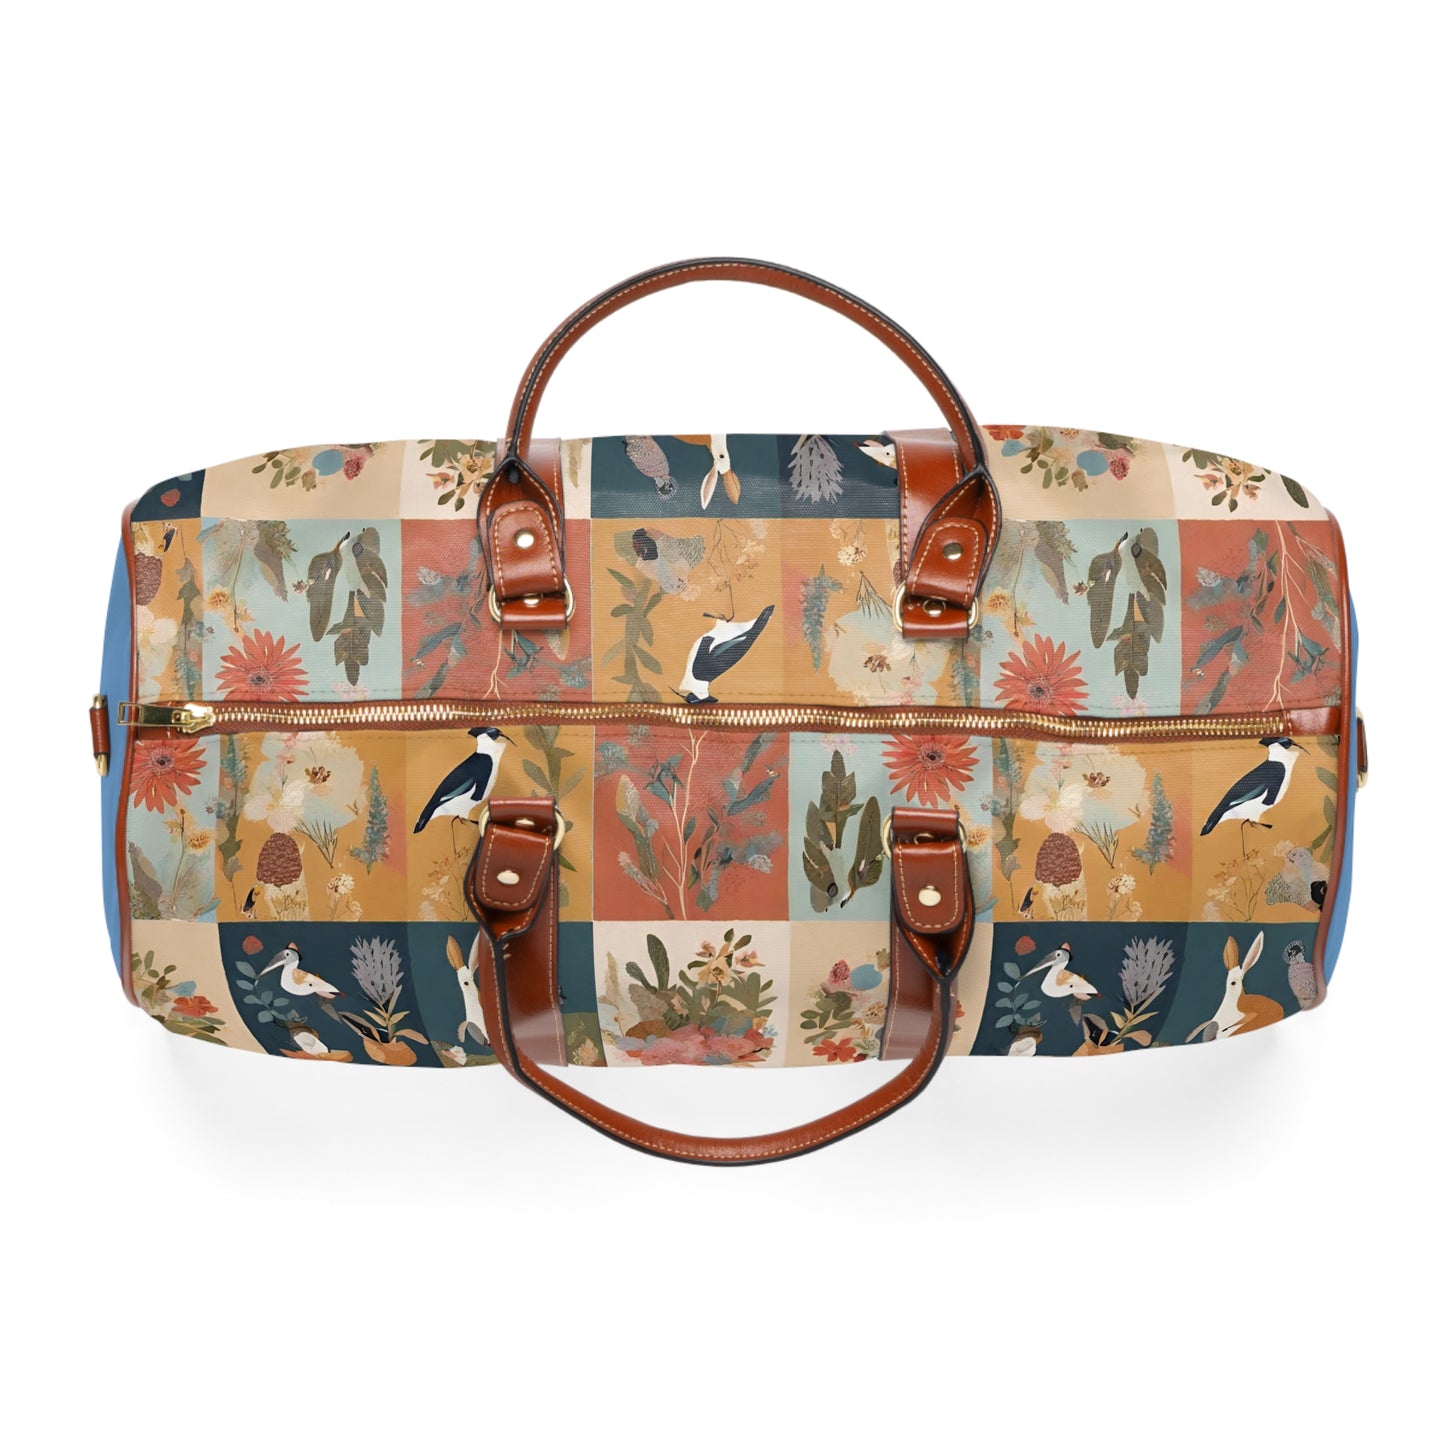 Australiana Wildlife Popping Quokka Waterproof Travel Bag